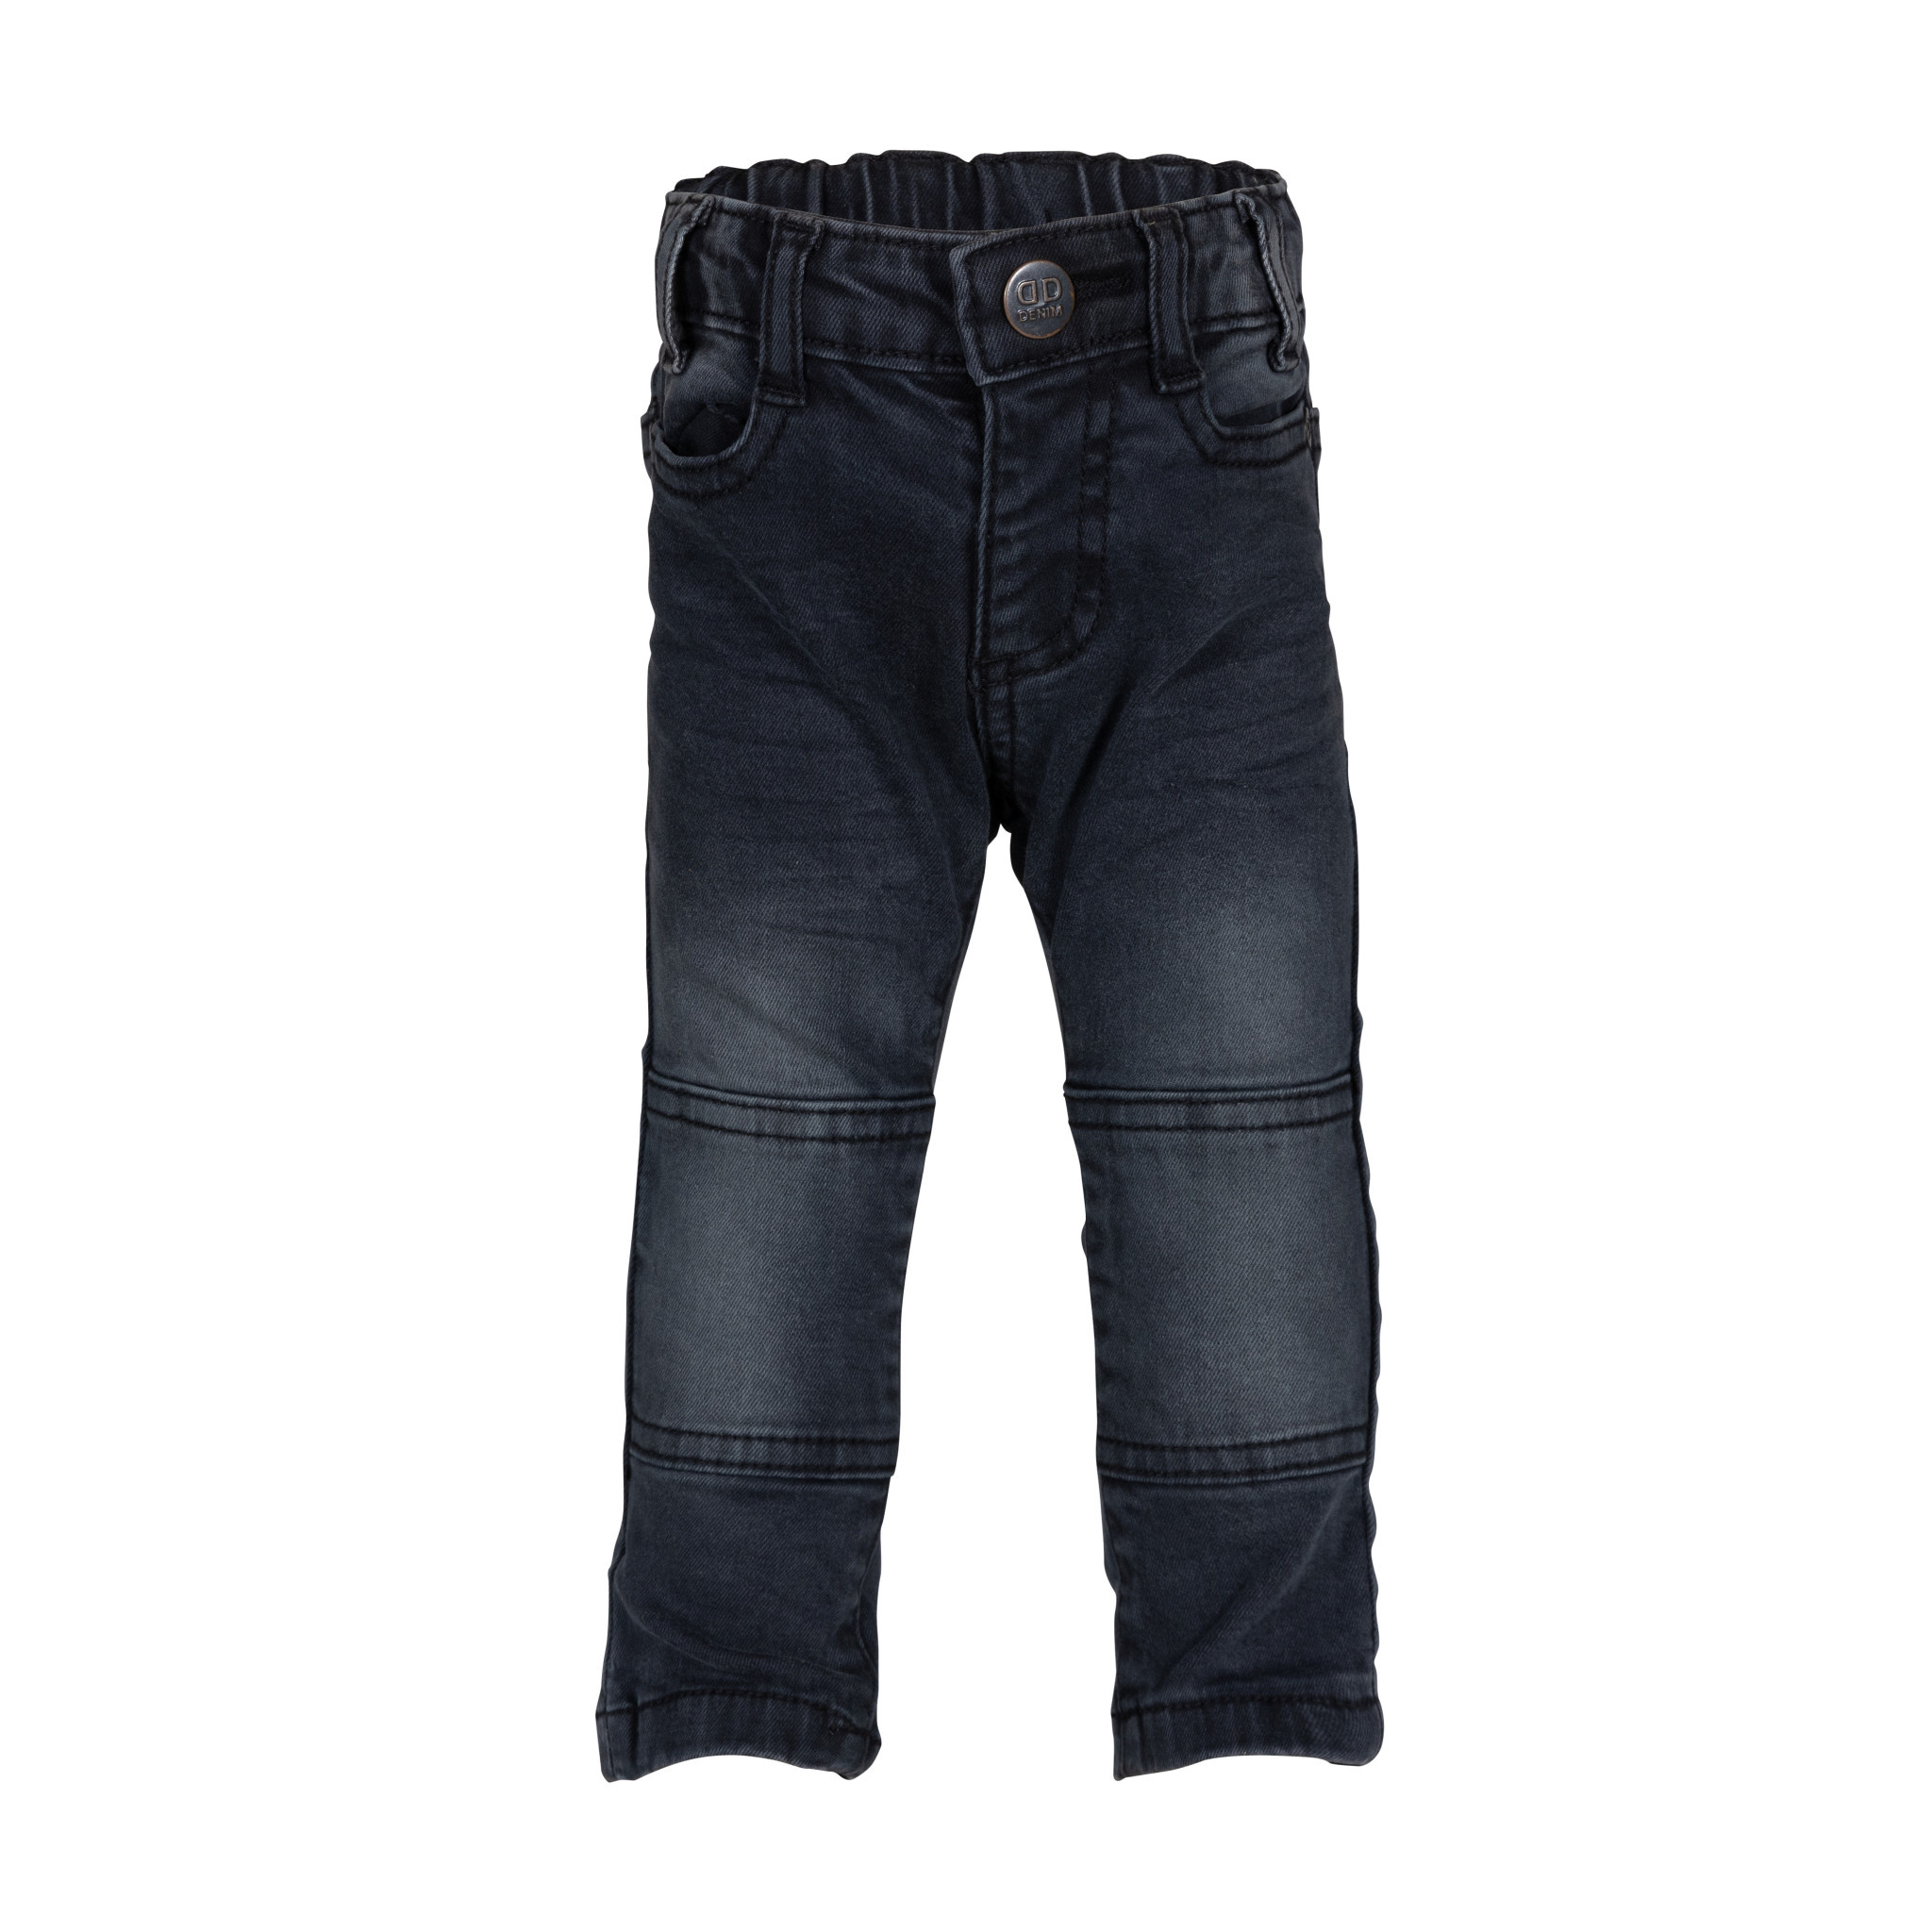 Afbeelding van Dutch Dream Denim Baby jongens jeans mwiko grey